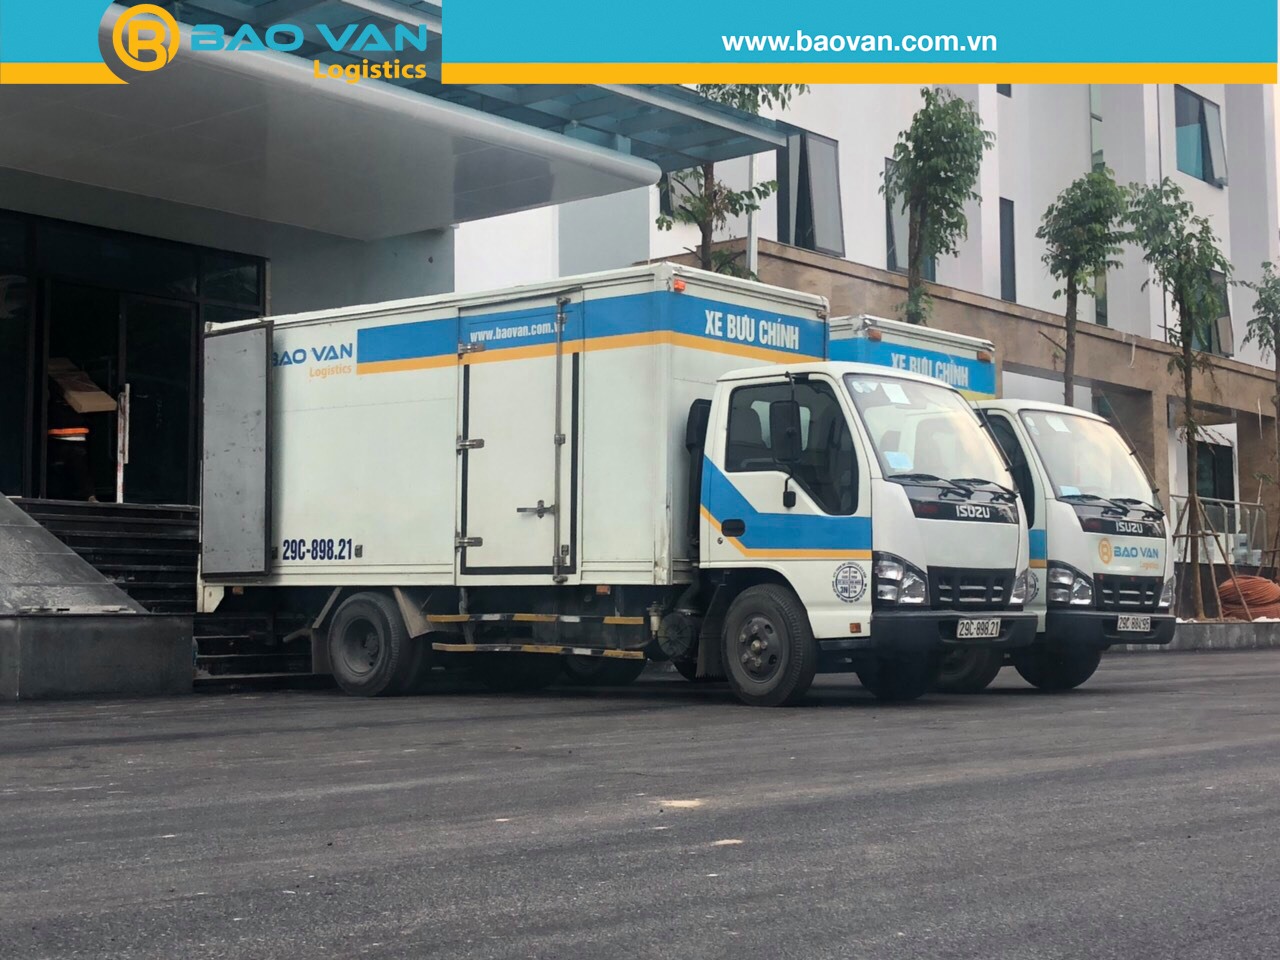 Xe tải chuyên dụng - Vận Tải Bảo Vận - Công Ty TNHH Dịch Vụ Logistics Bảo Vận